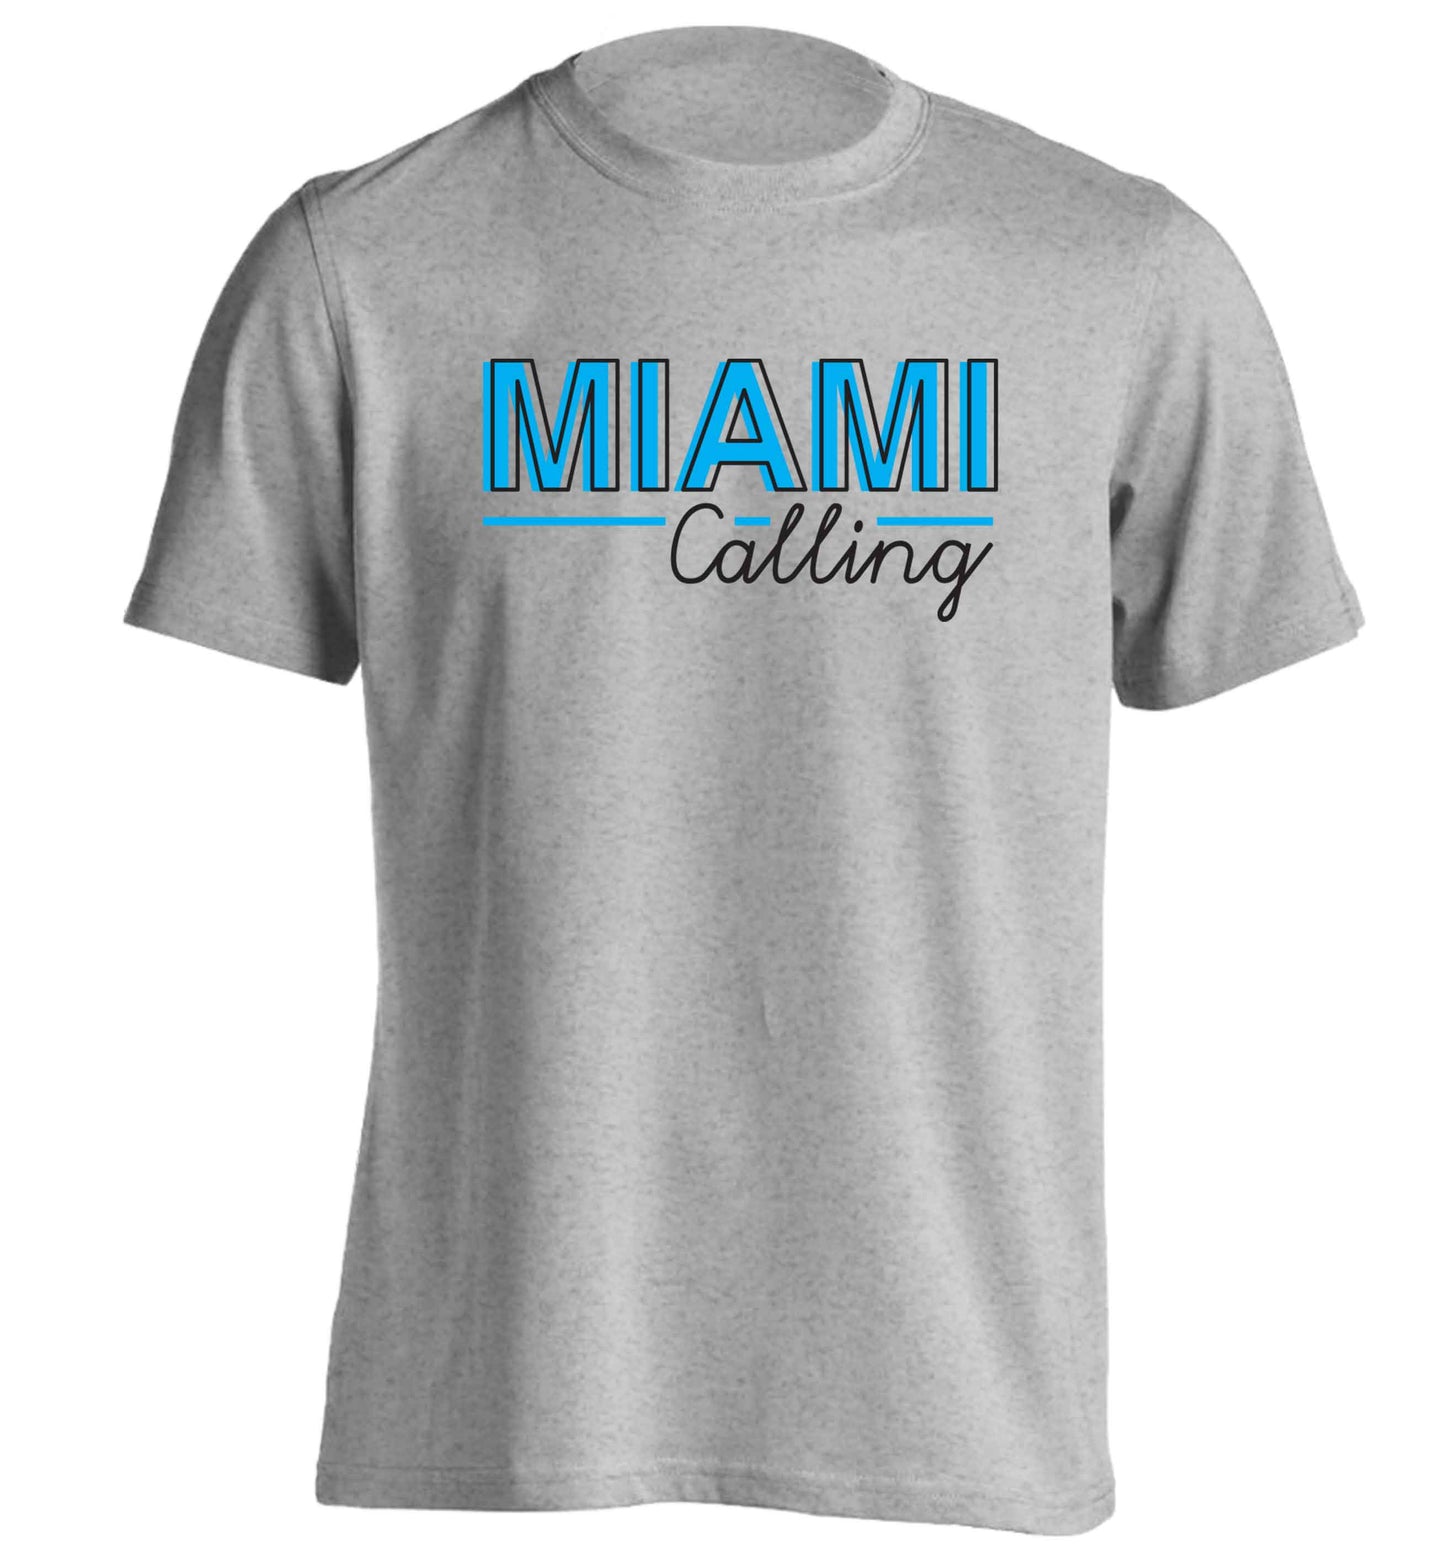 Miami calling adults unisex grey Tshirt 2XL